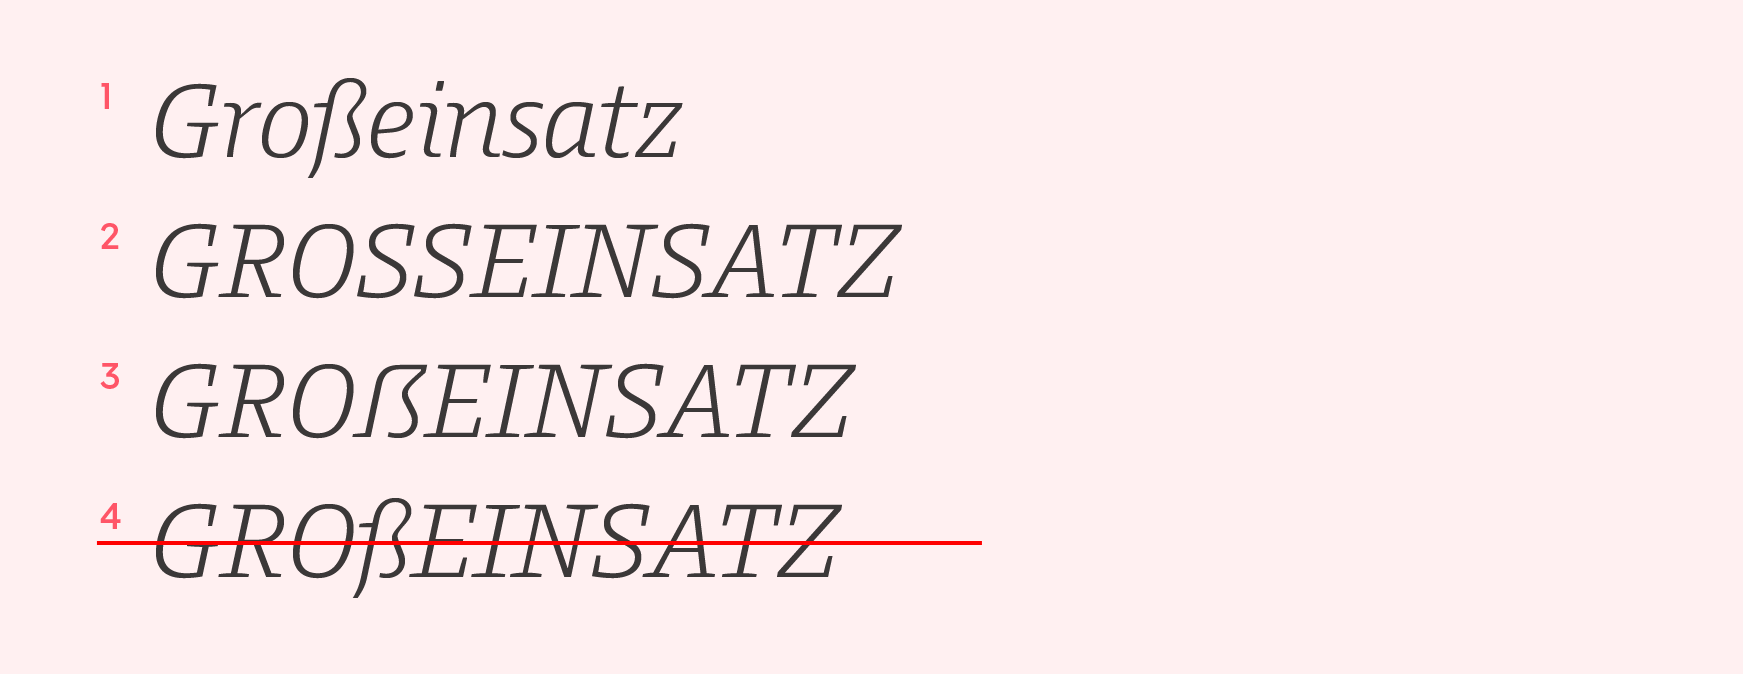 German looking font in word